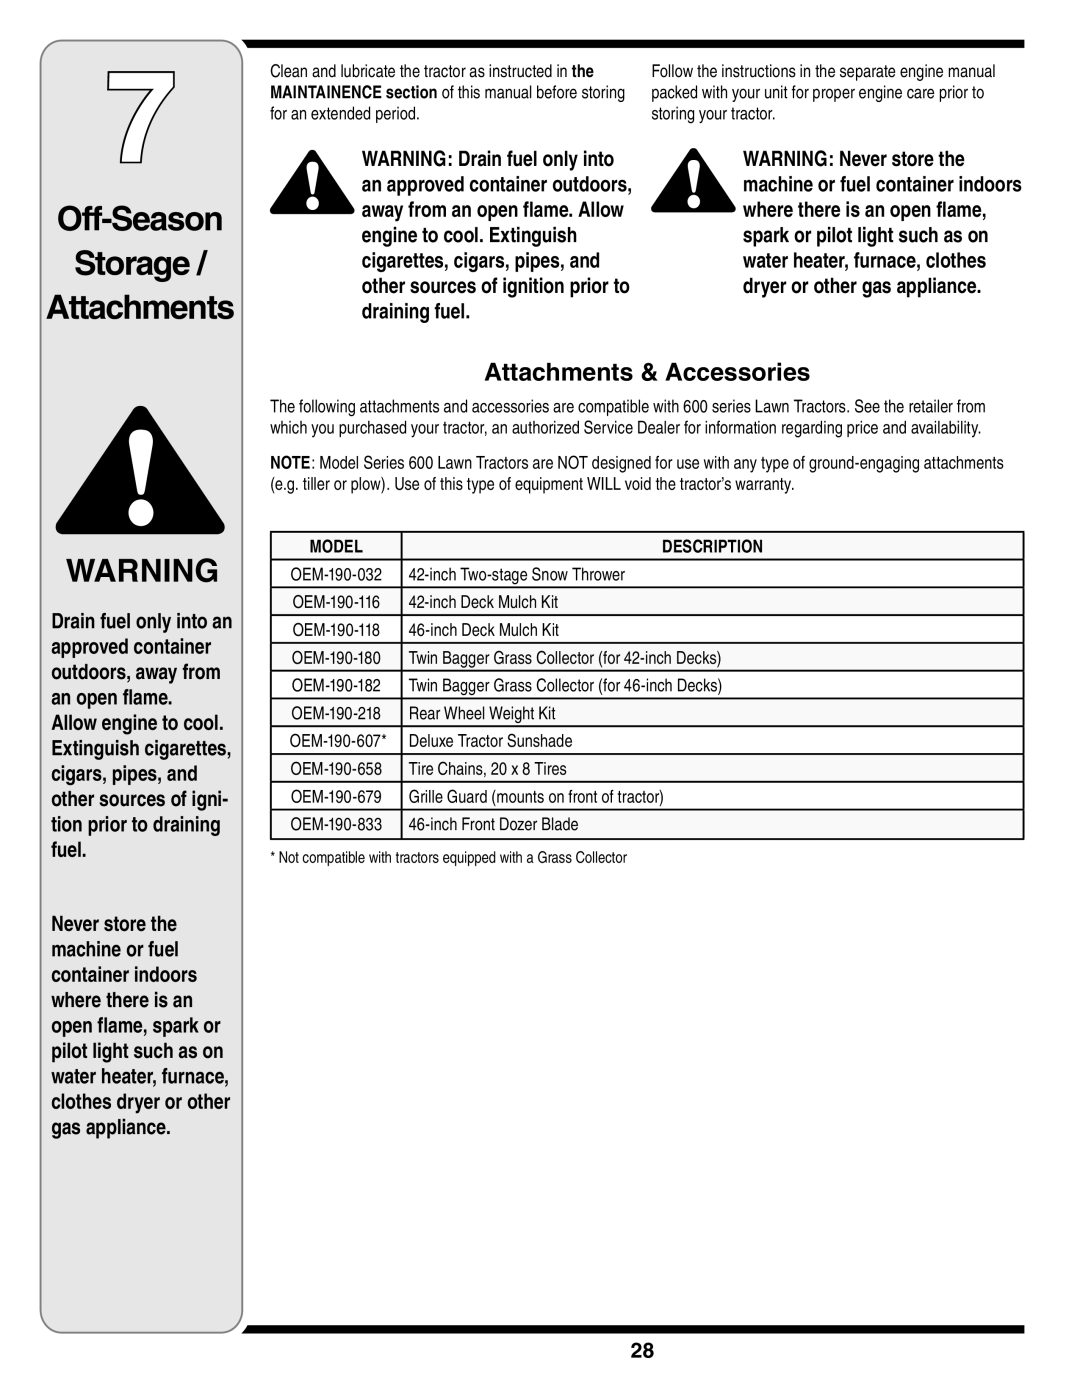 White Outdoor 606 manual Attachments & Accessories, Off-Season Storage Attachments, Model, Description 